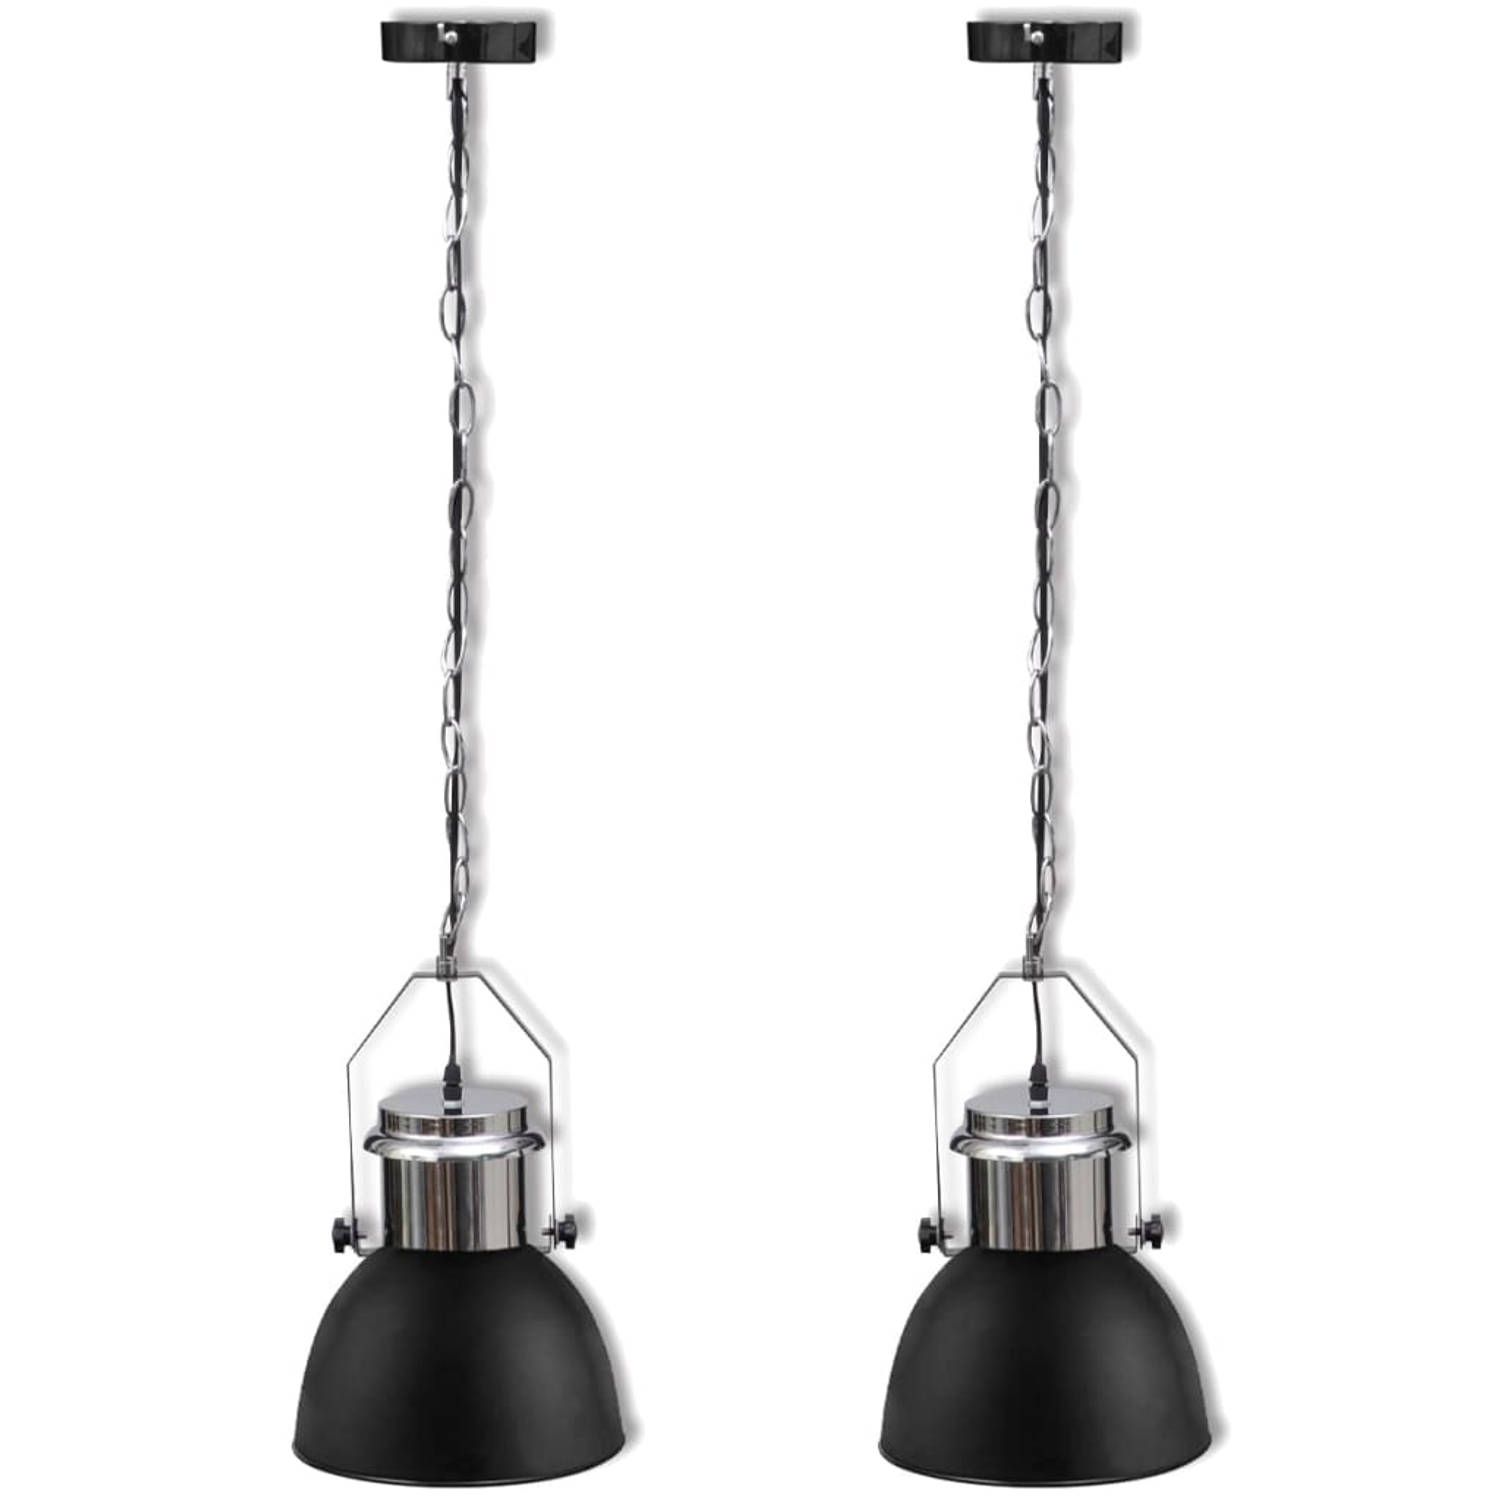 The Living Store Hanglamp Moderne Hanglampen Afmeting- 23 x 36 cm Kleur- Zwart en zilver Materiaal- 